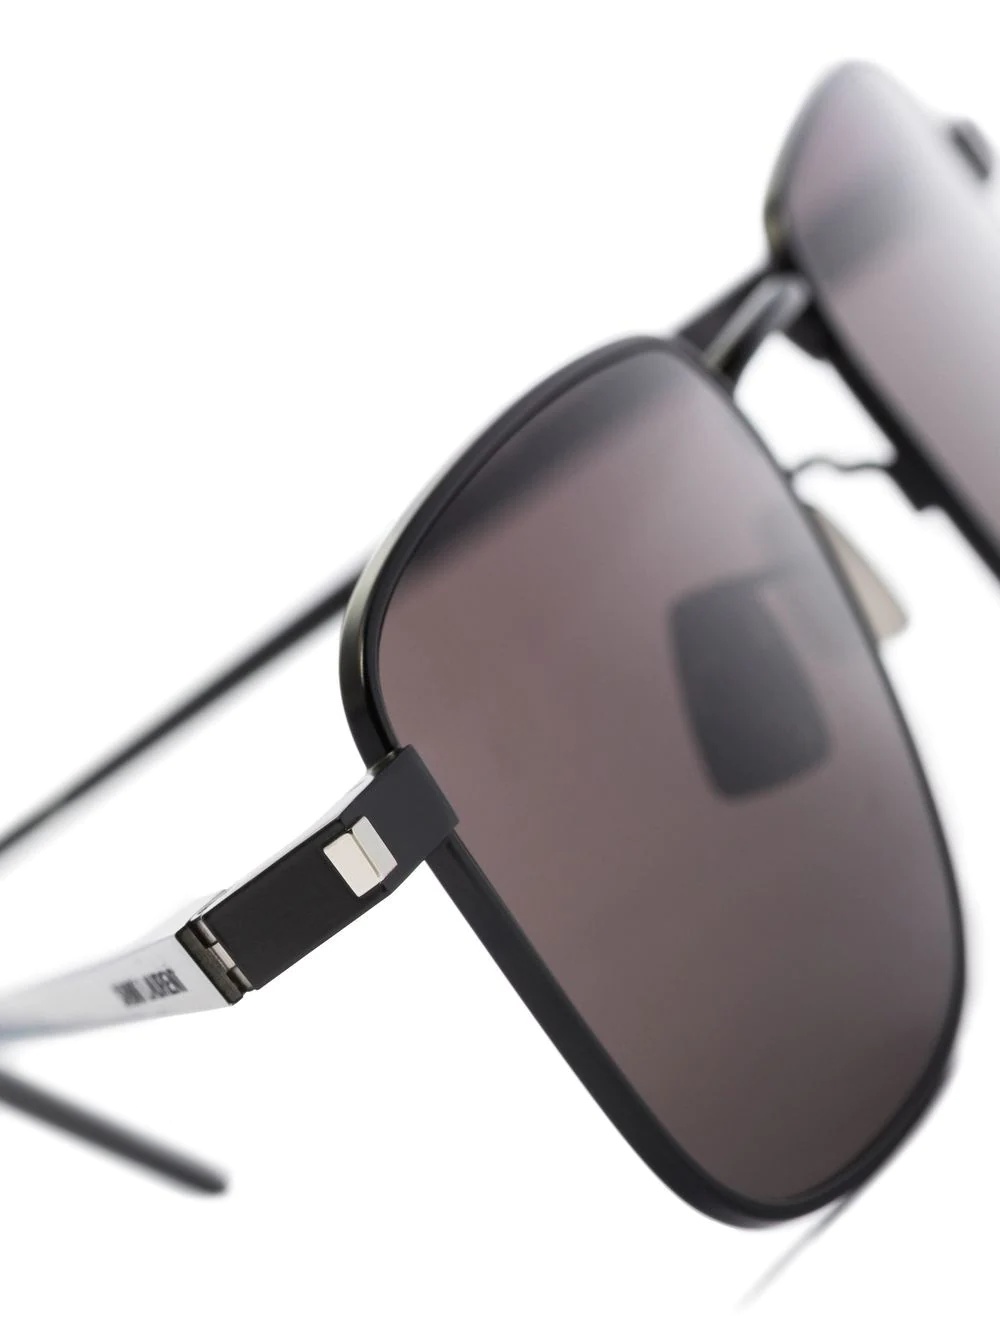 square-frame sunglasses - 3